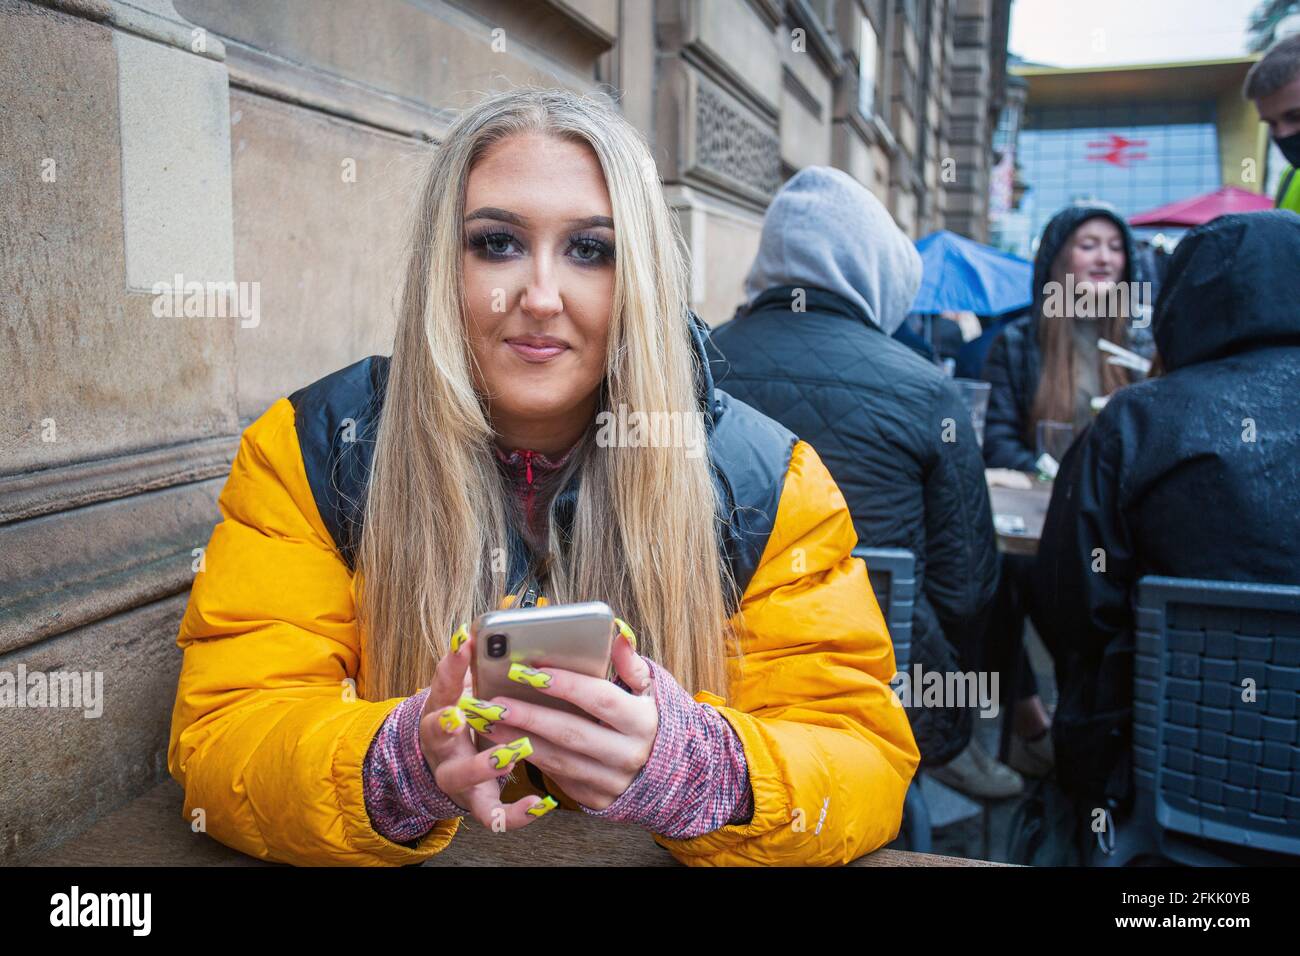 Jeune femme avec ongles longs en acrylique manucurés utilisant un téléphone portable à Glasgow, en Écosse Banque D'Images